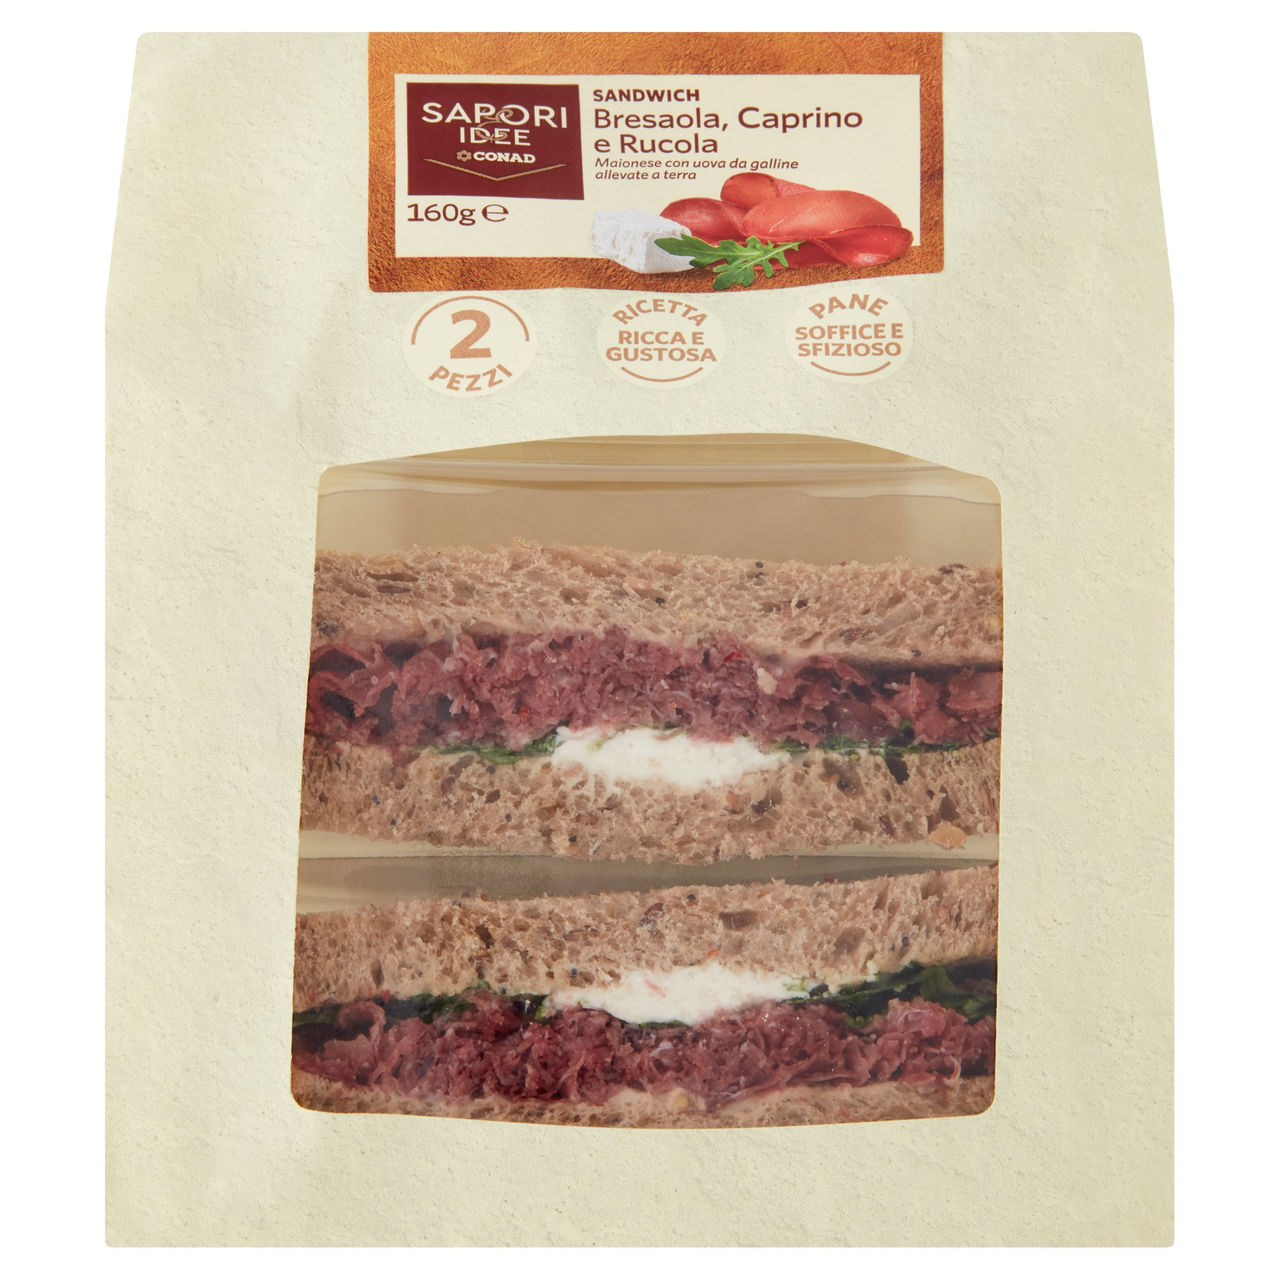 SAPORI & IDEE CONAD Sandwich Bresaola, Caprino e Rucola 2 Pezzi 160 g